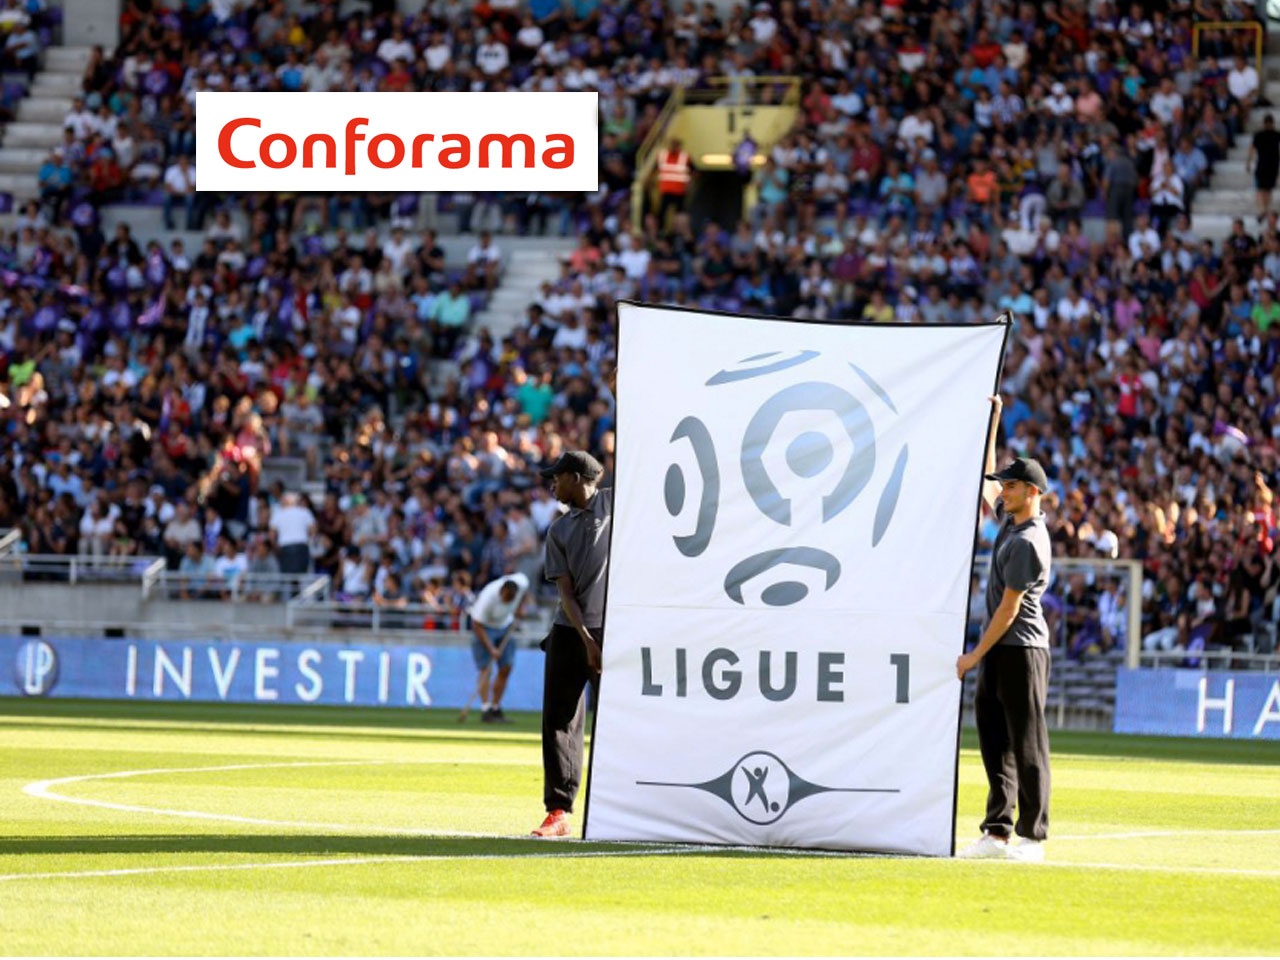 La Ligue 1 Conforama